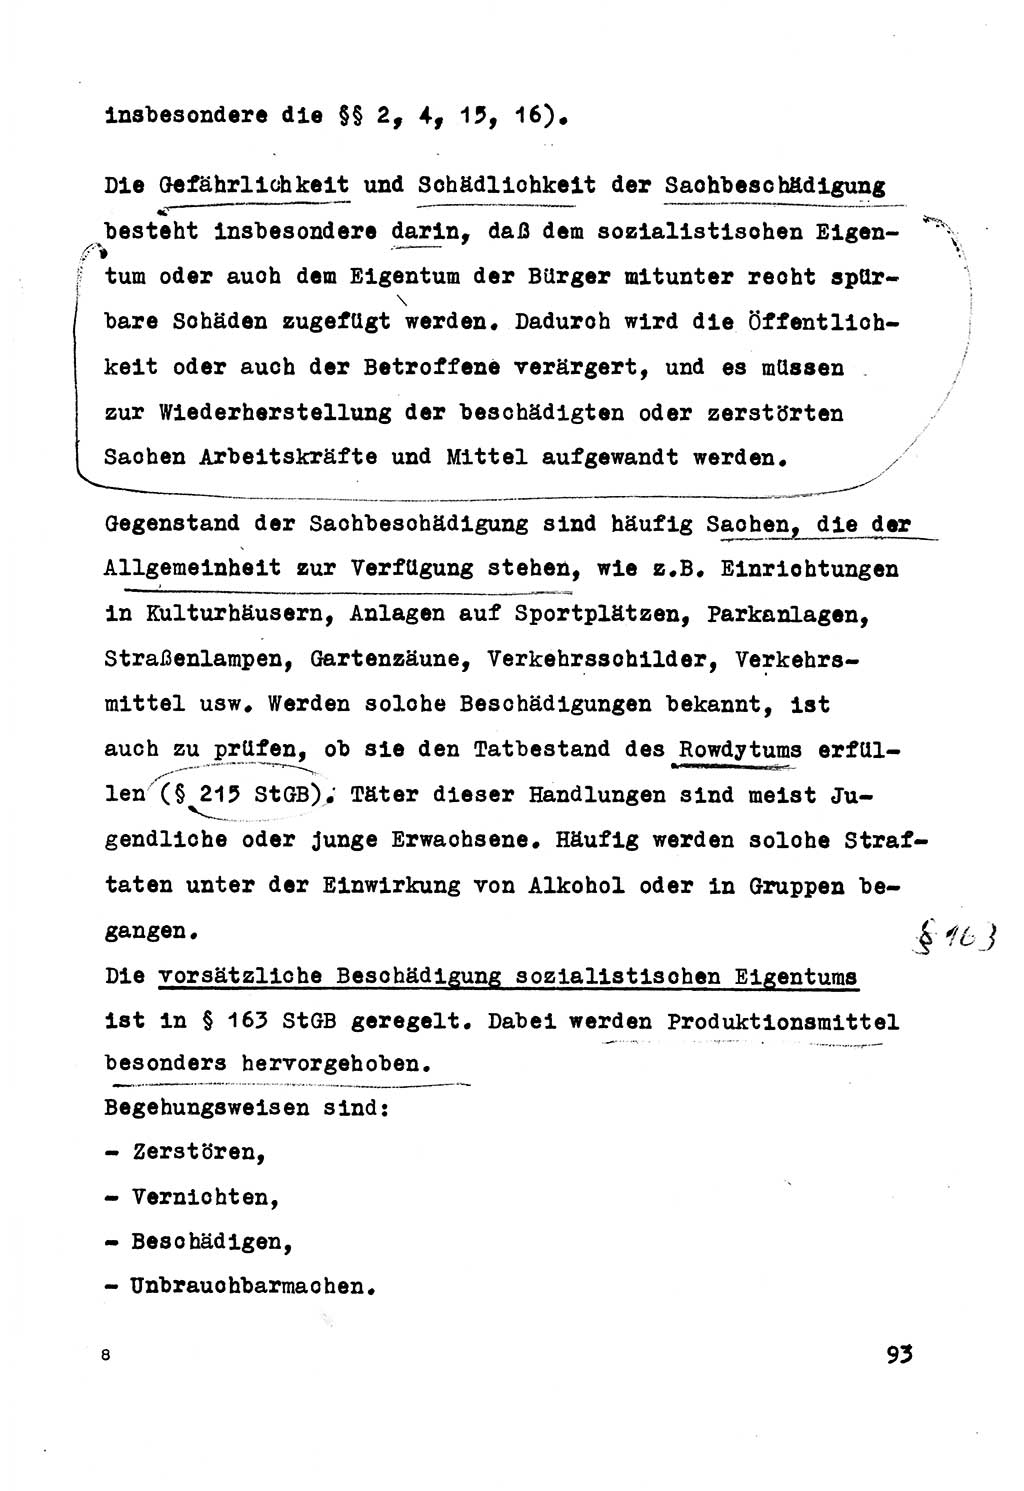 Strafrecht der DDR (Deutsche Demokratische Republik), Besonderer Teil, Lehrmaterial, Heft 5 1970, Seite 93 (Strafr. DDR BT Lehrmat. H. 5 1970, S. 93)